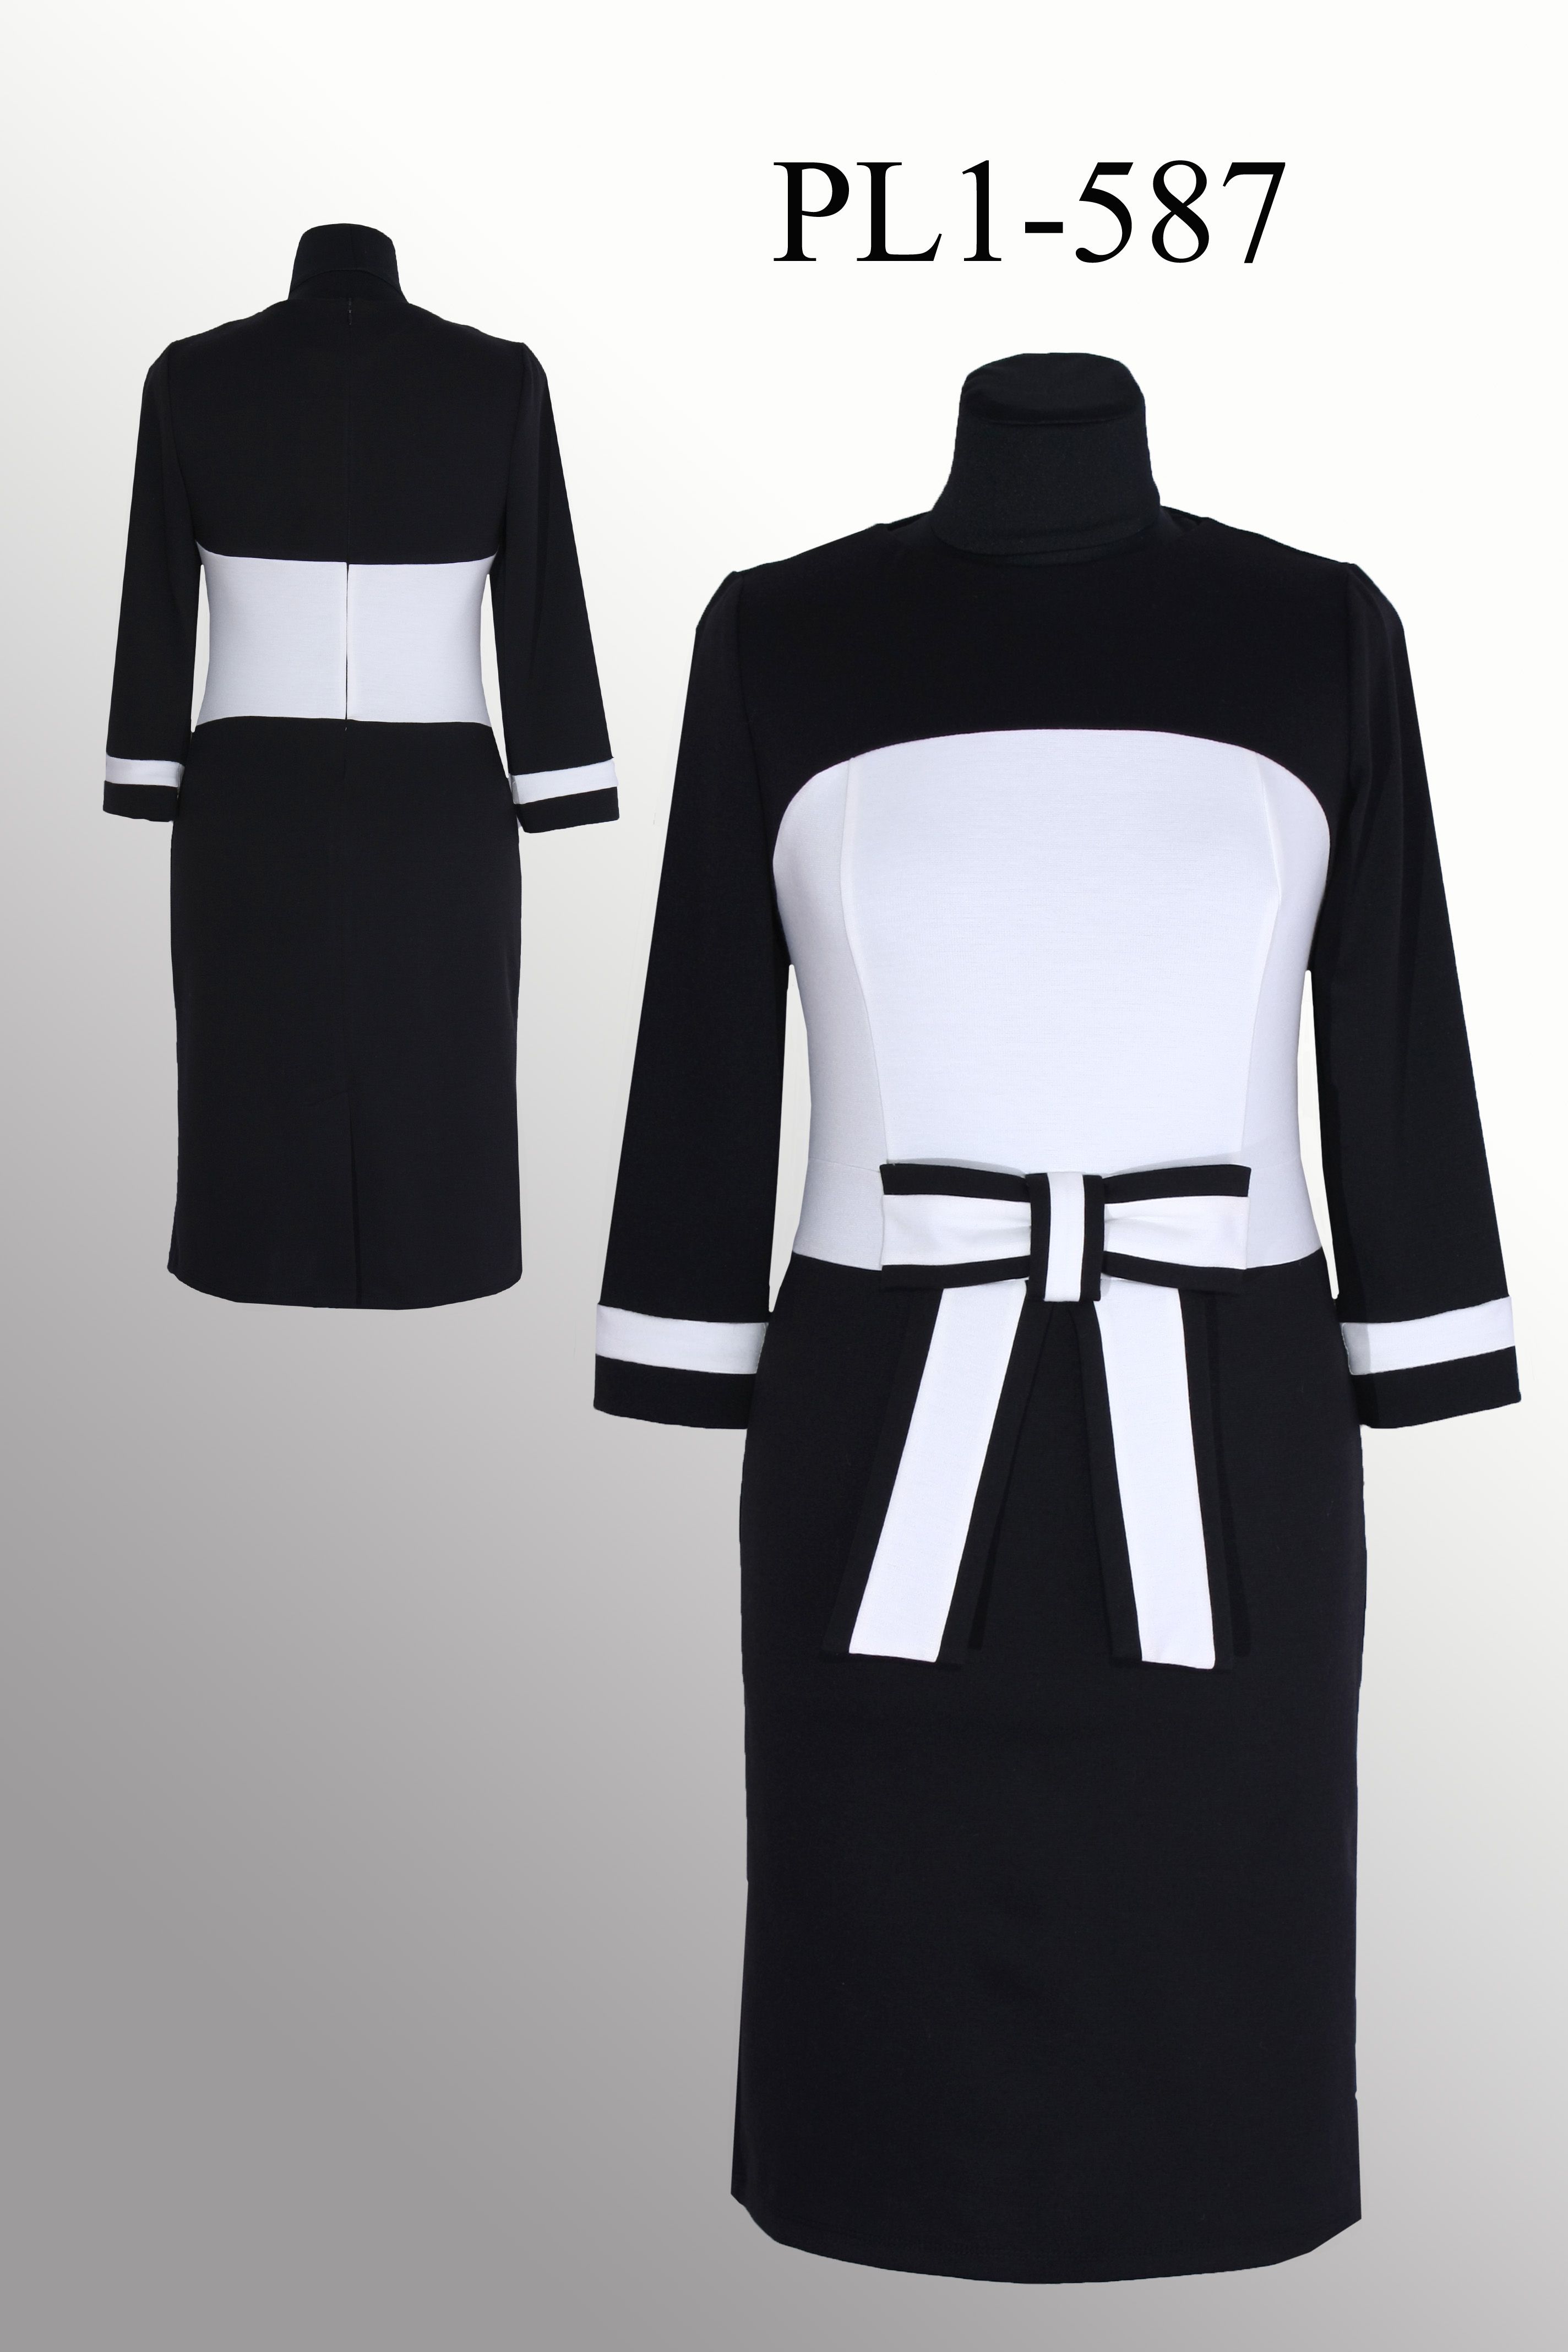 Платье PL1-587 купить на сайте производителя